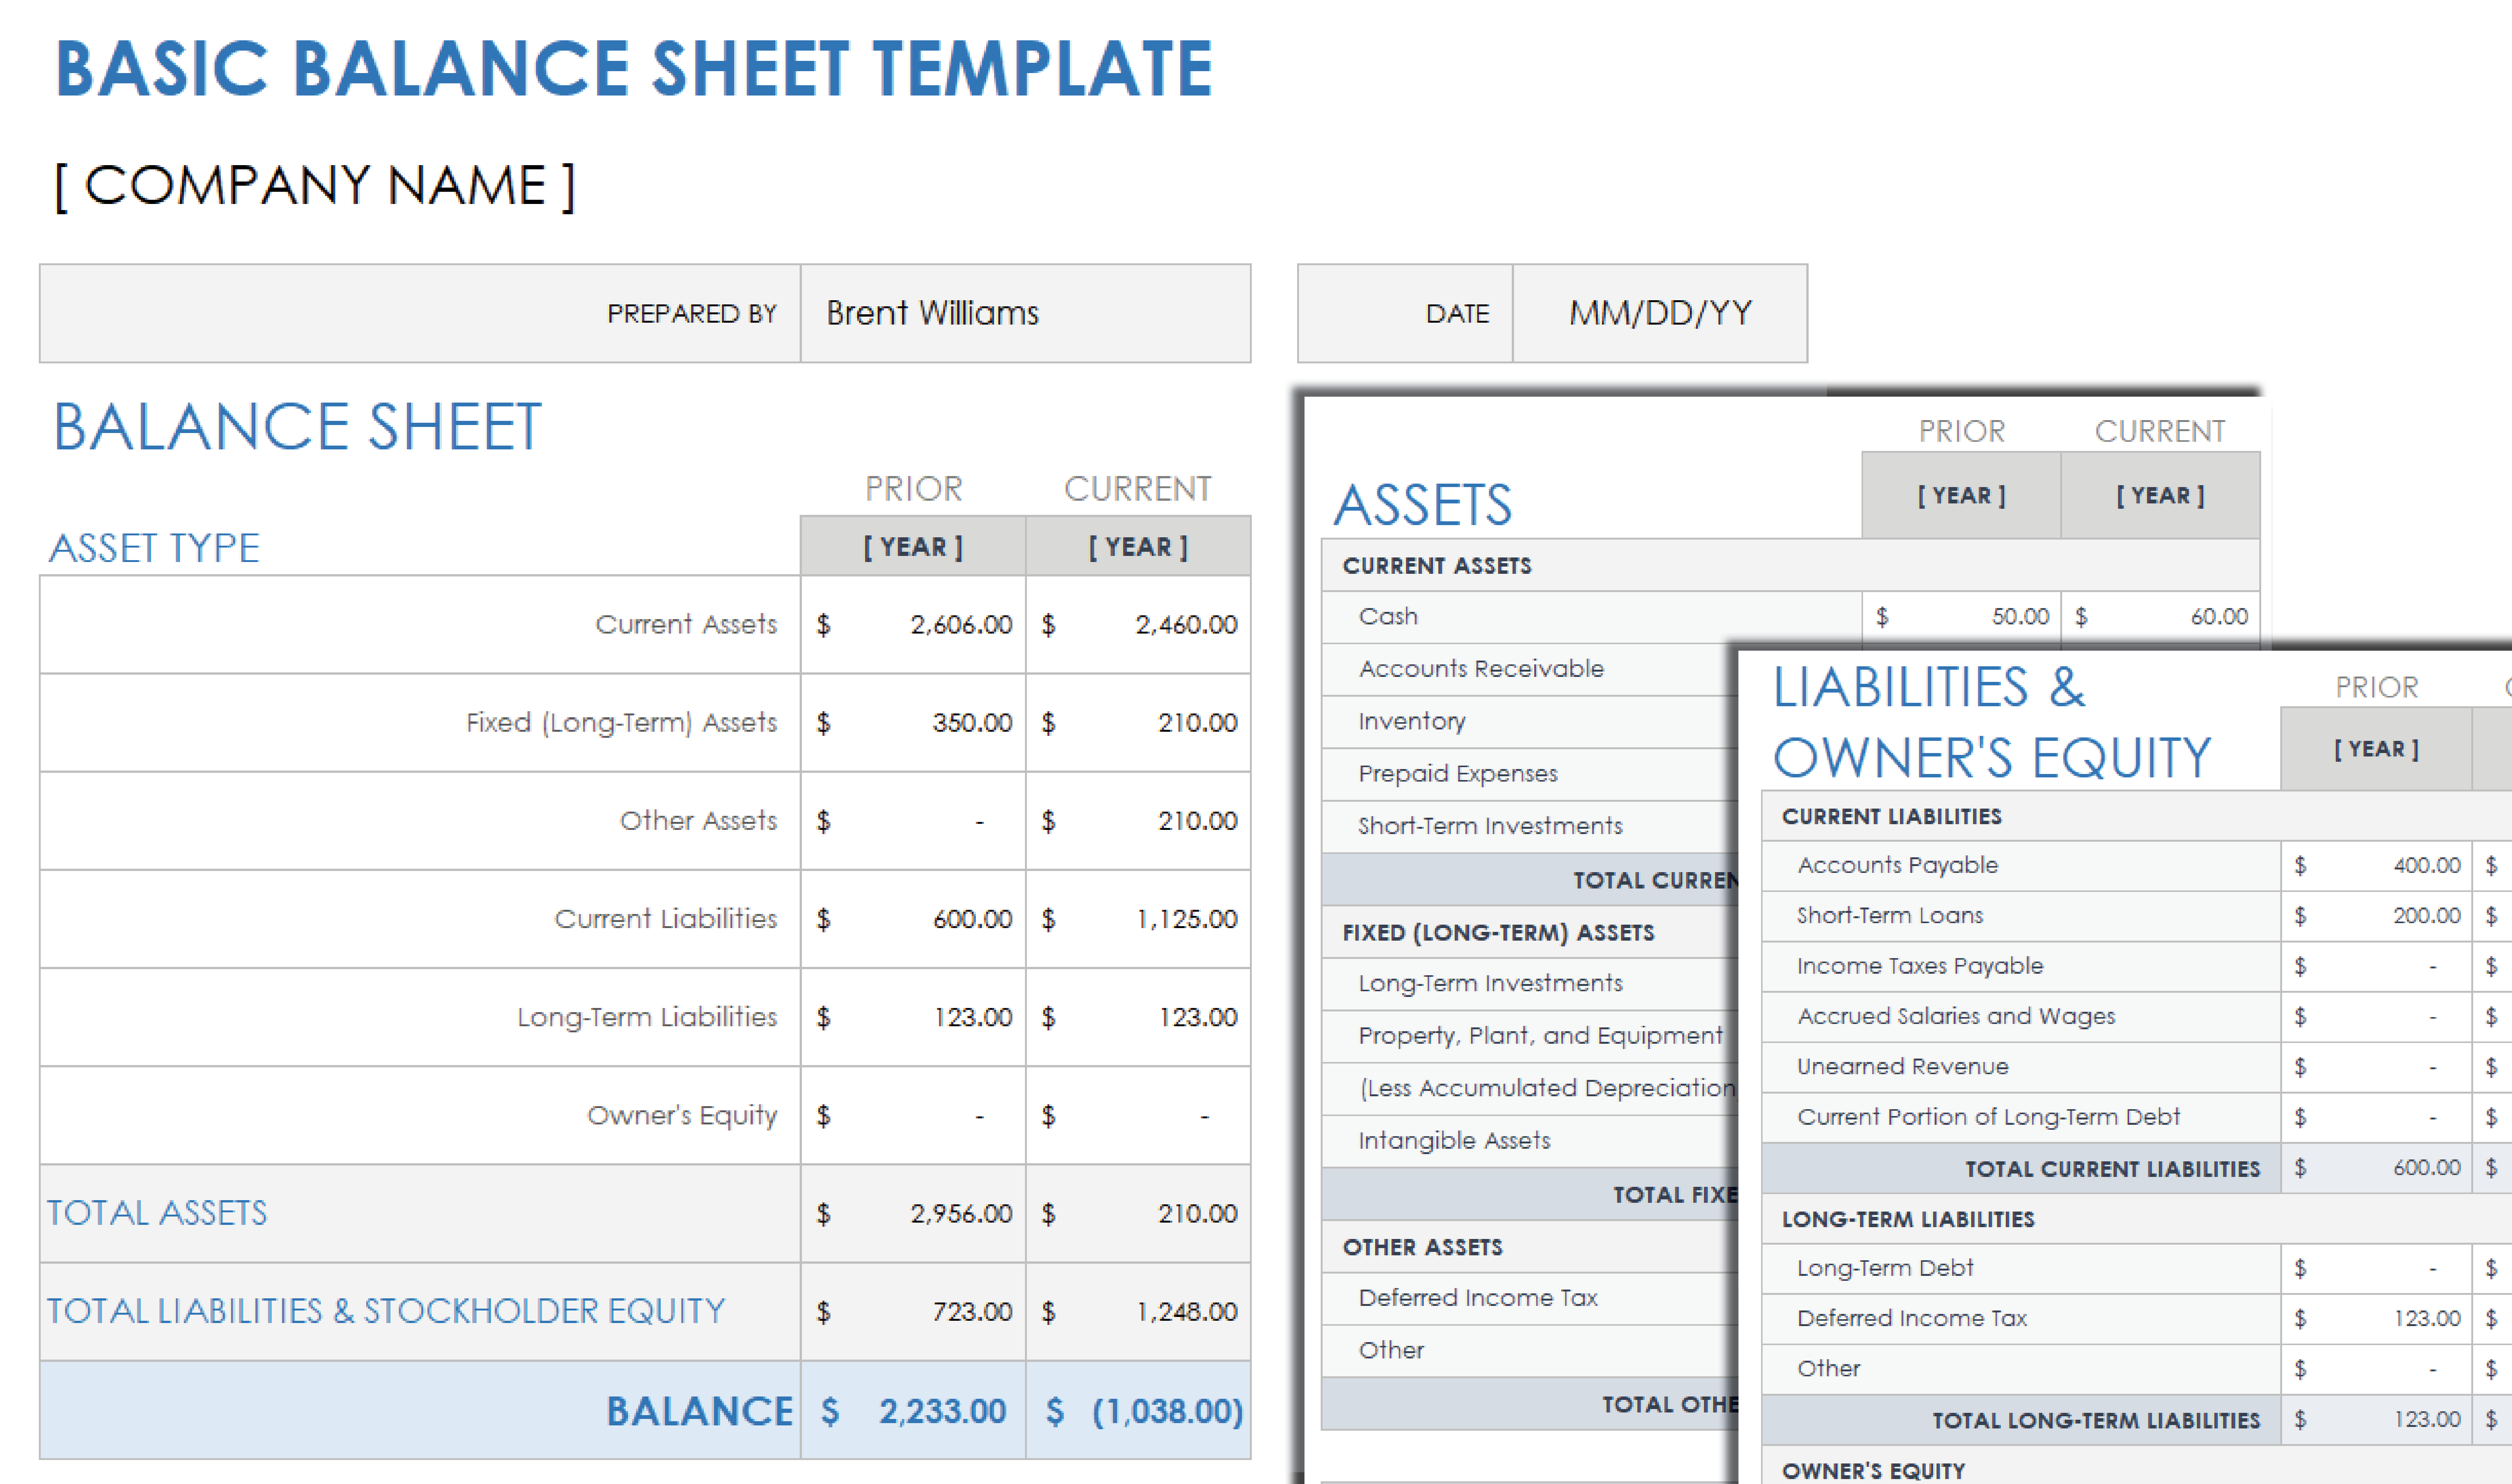 Basic Balance Sheet Template